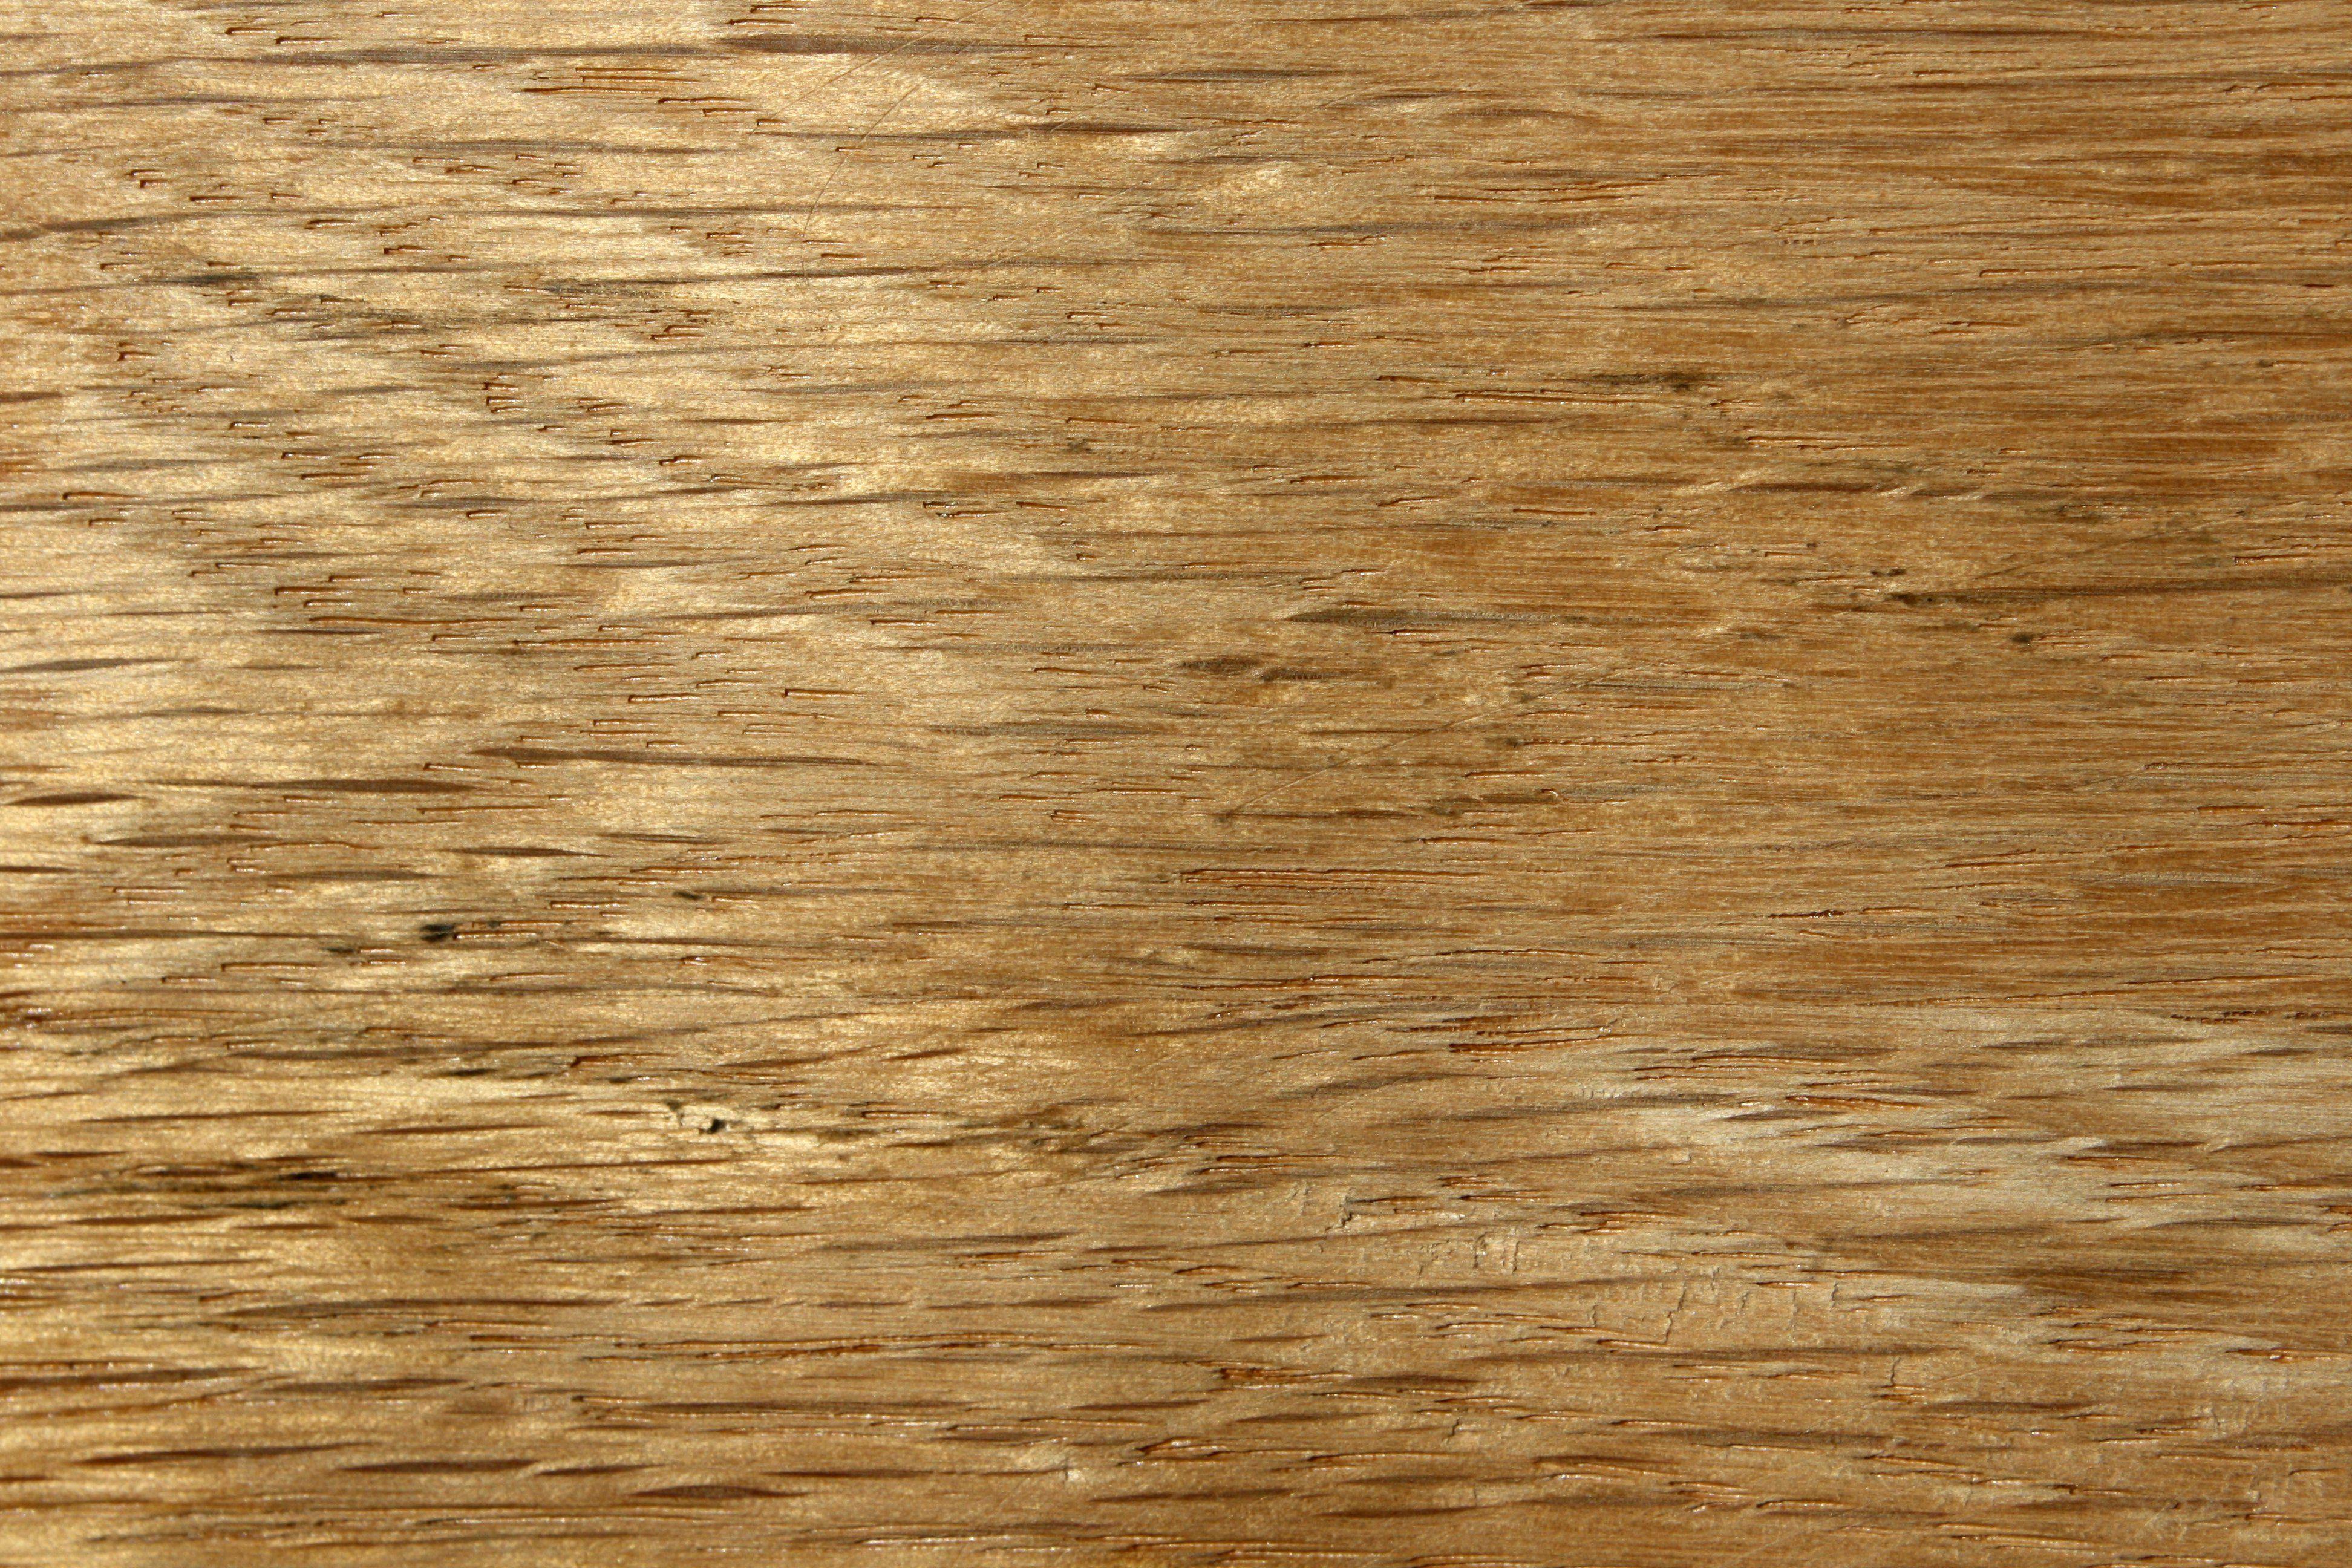 Oak Wood Grain Texture Close Up Picture. Free Photograph. Photo